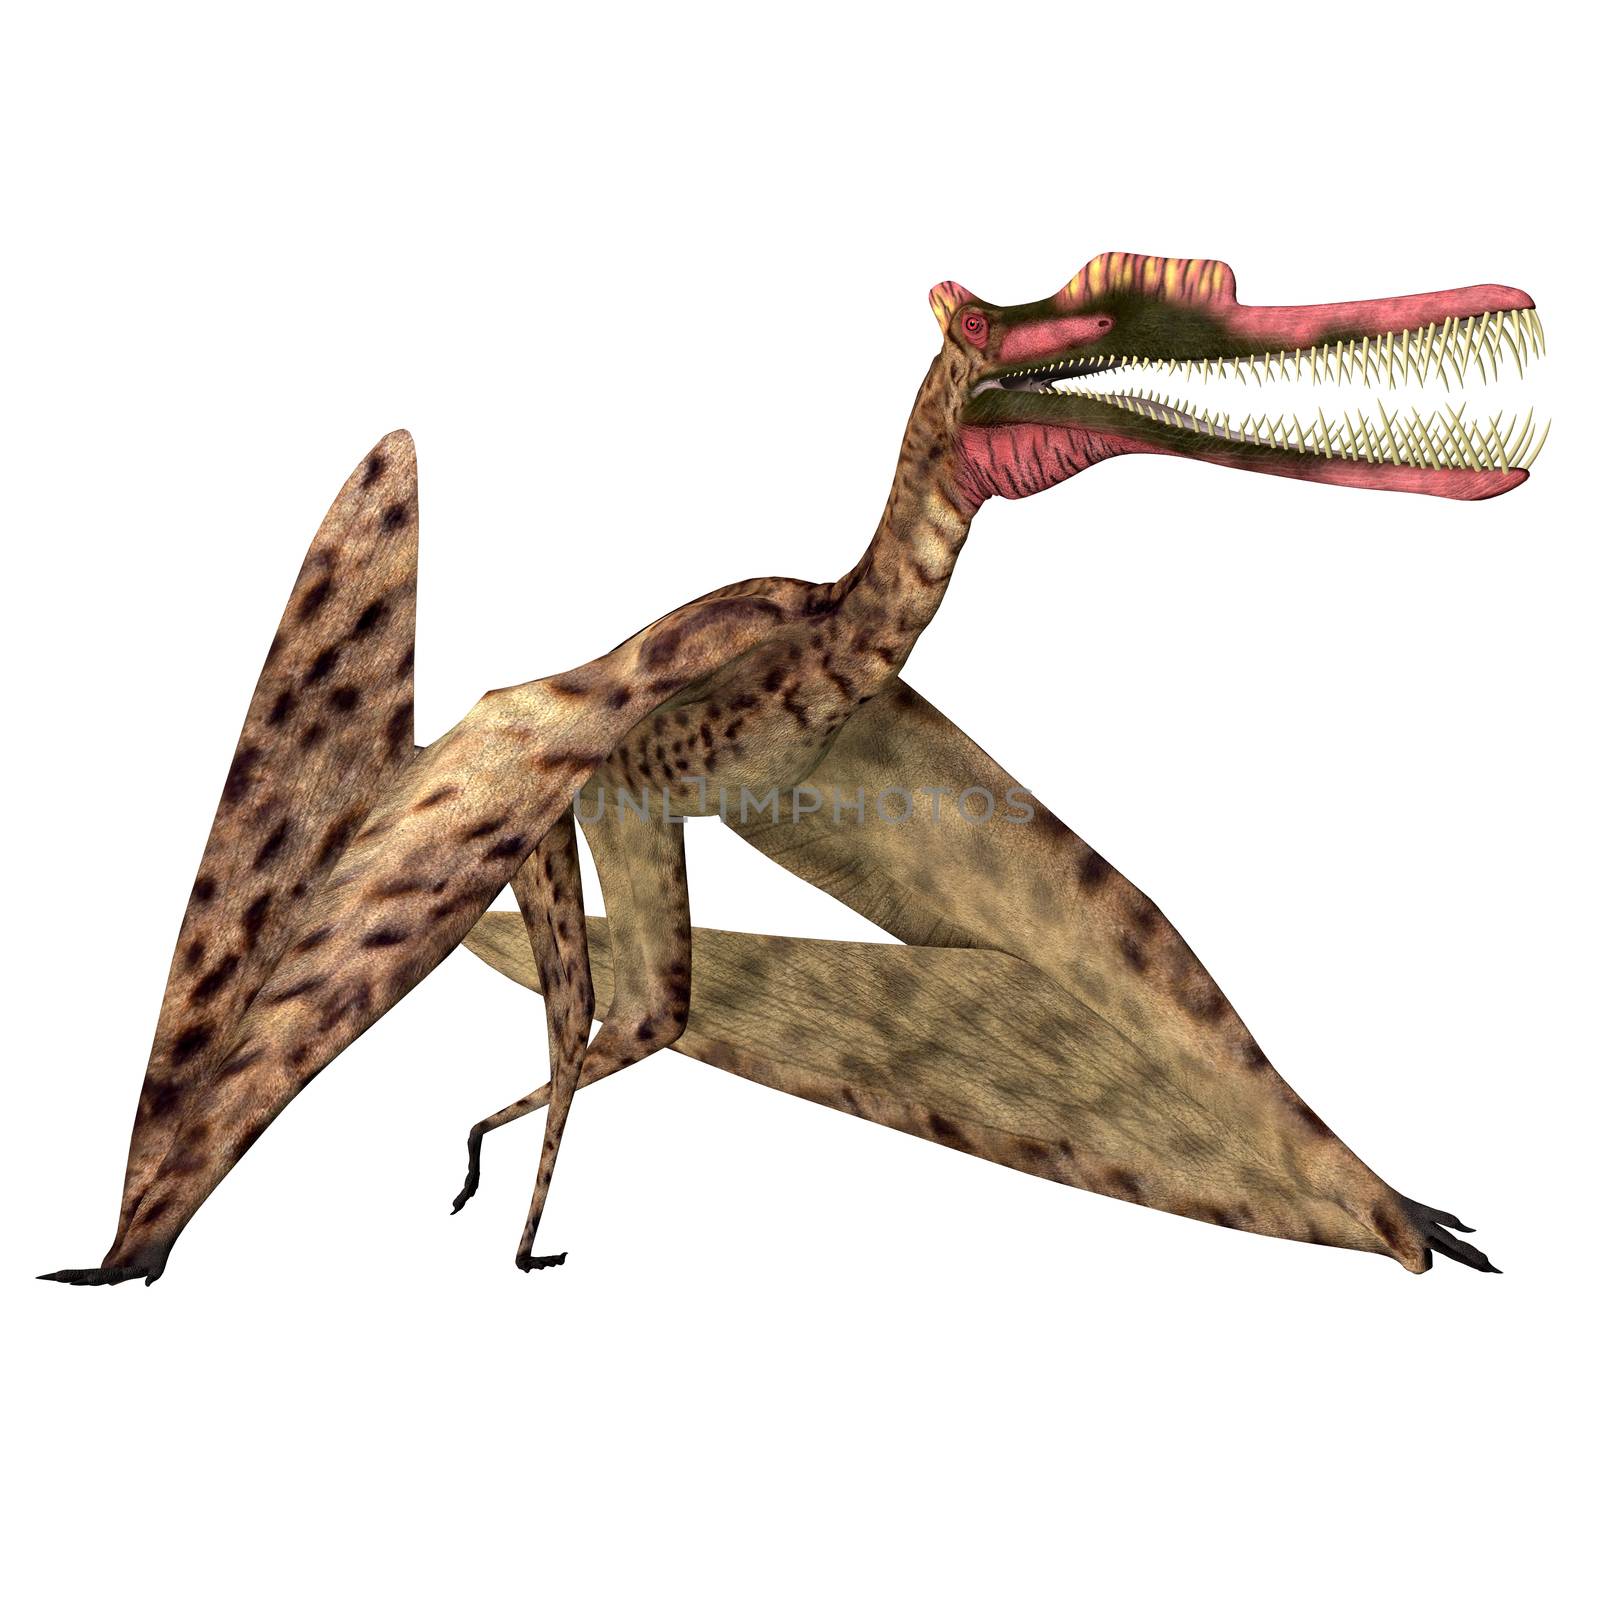 Zhenyuanopterus Pterosaur Walking by Catmando